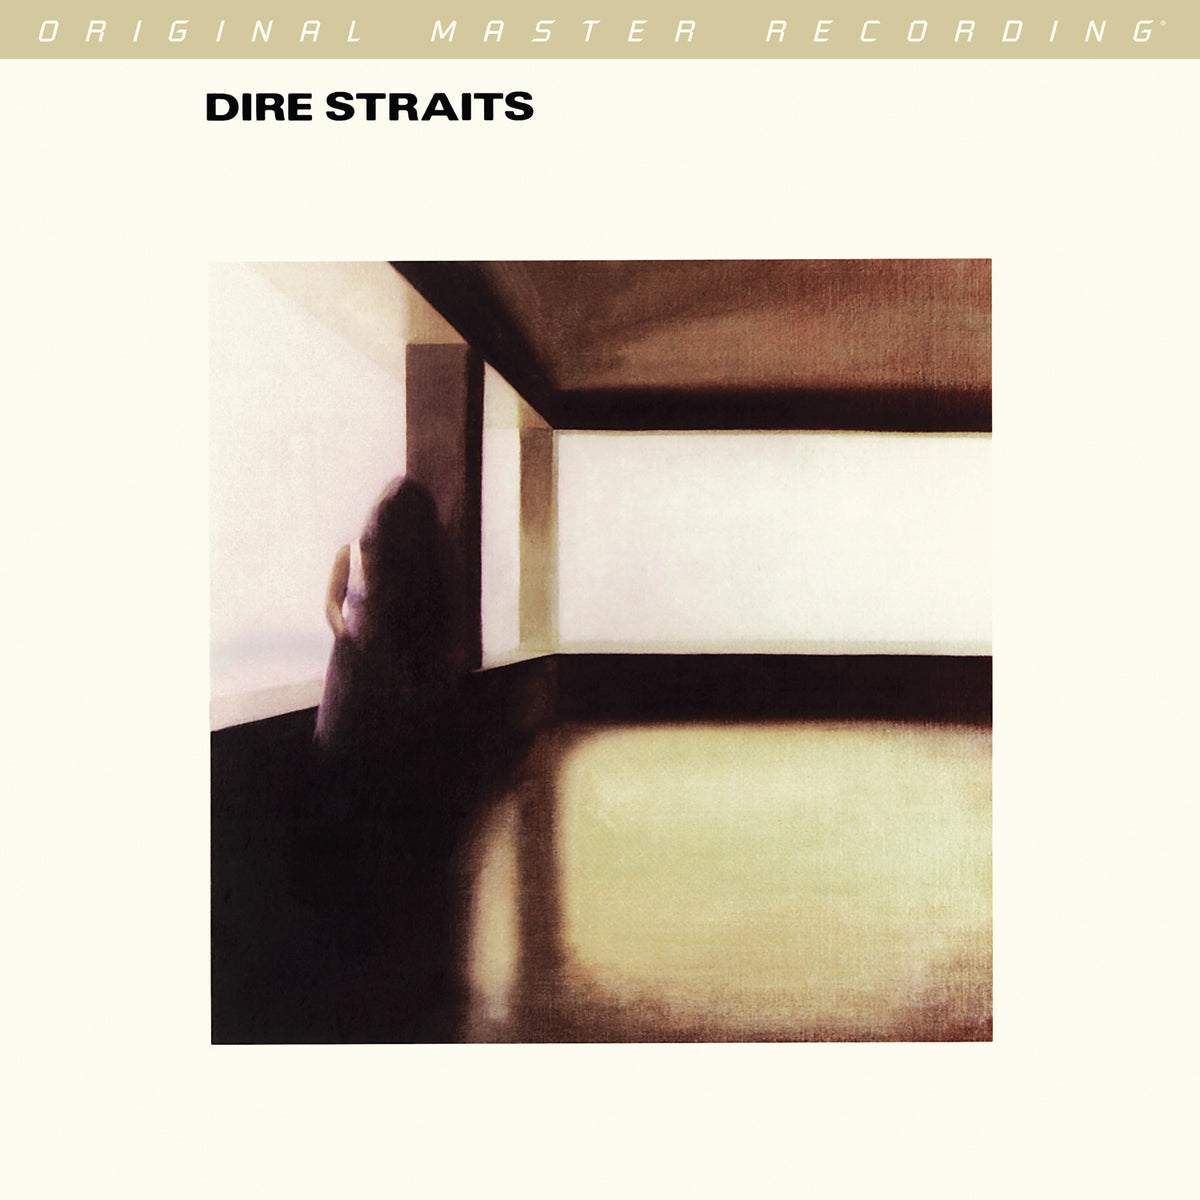 Dire Straits - Dire Straits [2LP] (180 Gram 45RPM Audiophile Vinyl, Mobile Fidelity Sound Lab)